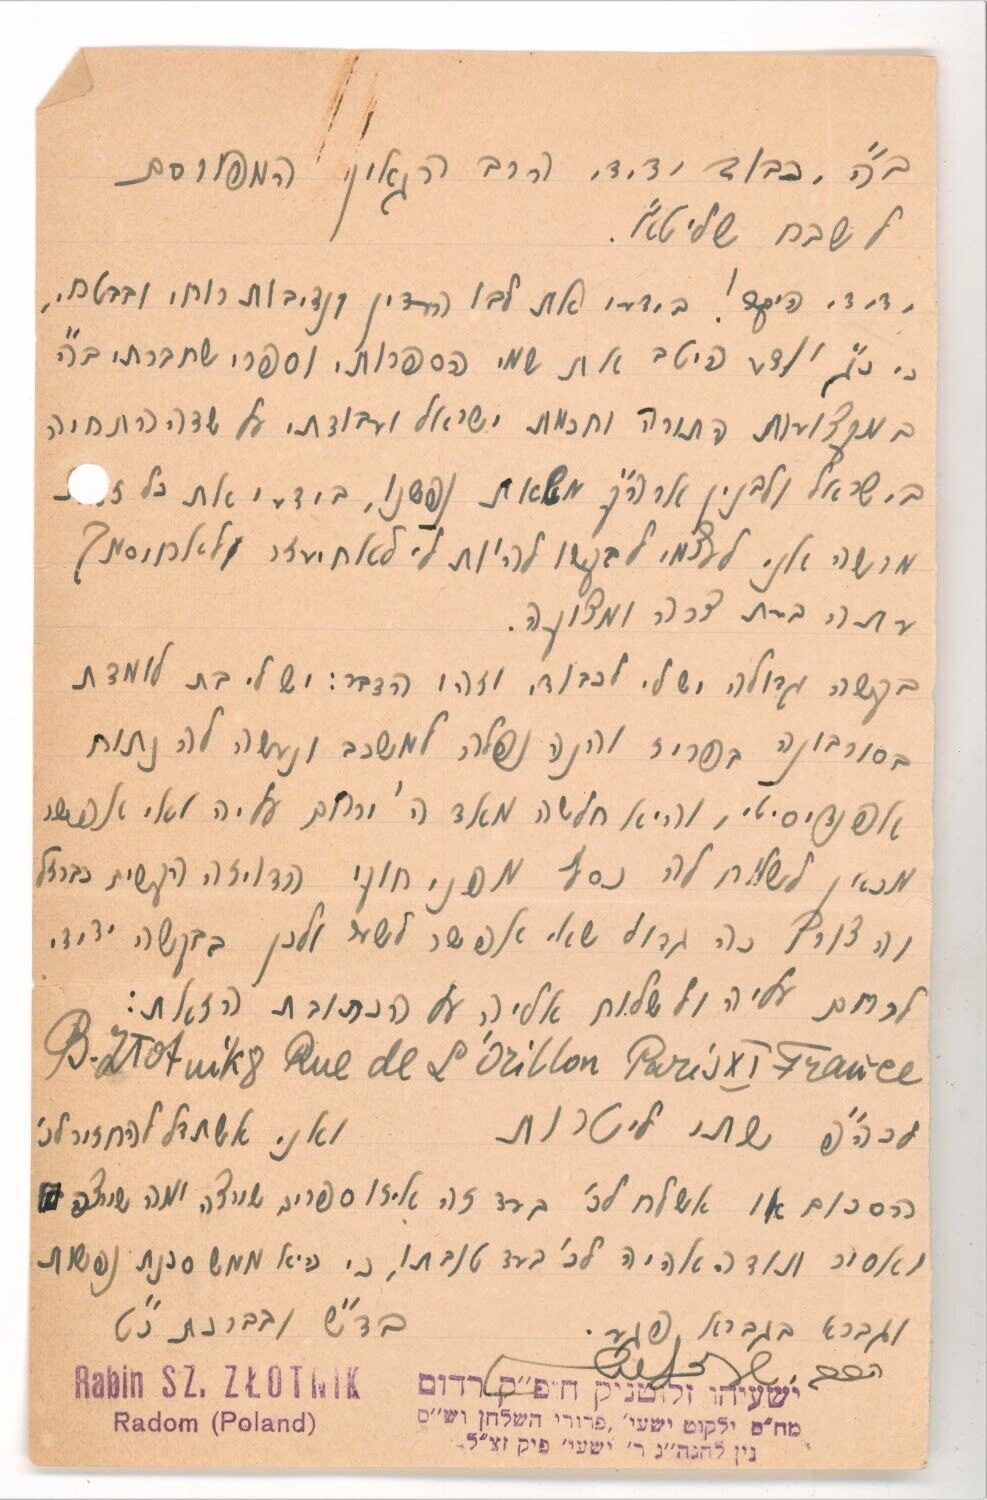 Judaica Hebrew Letter by Rabbi Yeshaya Zlotnik, Radom Poland.